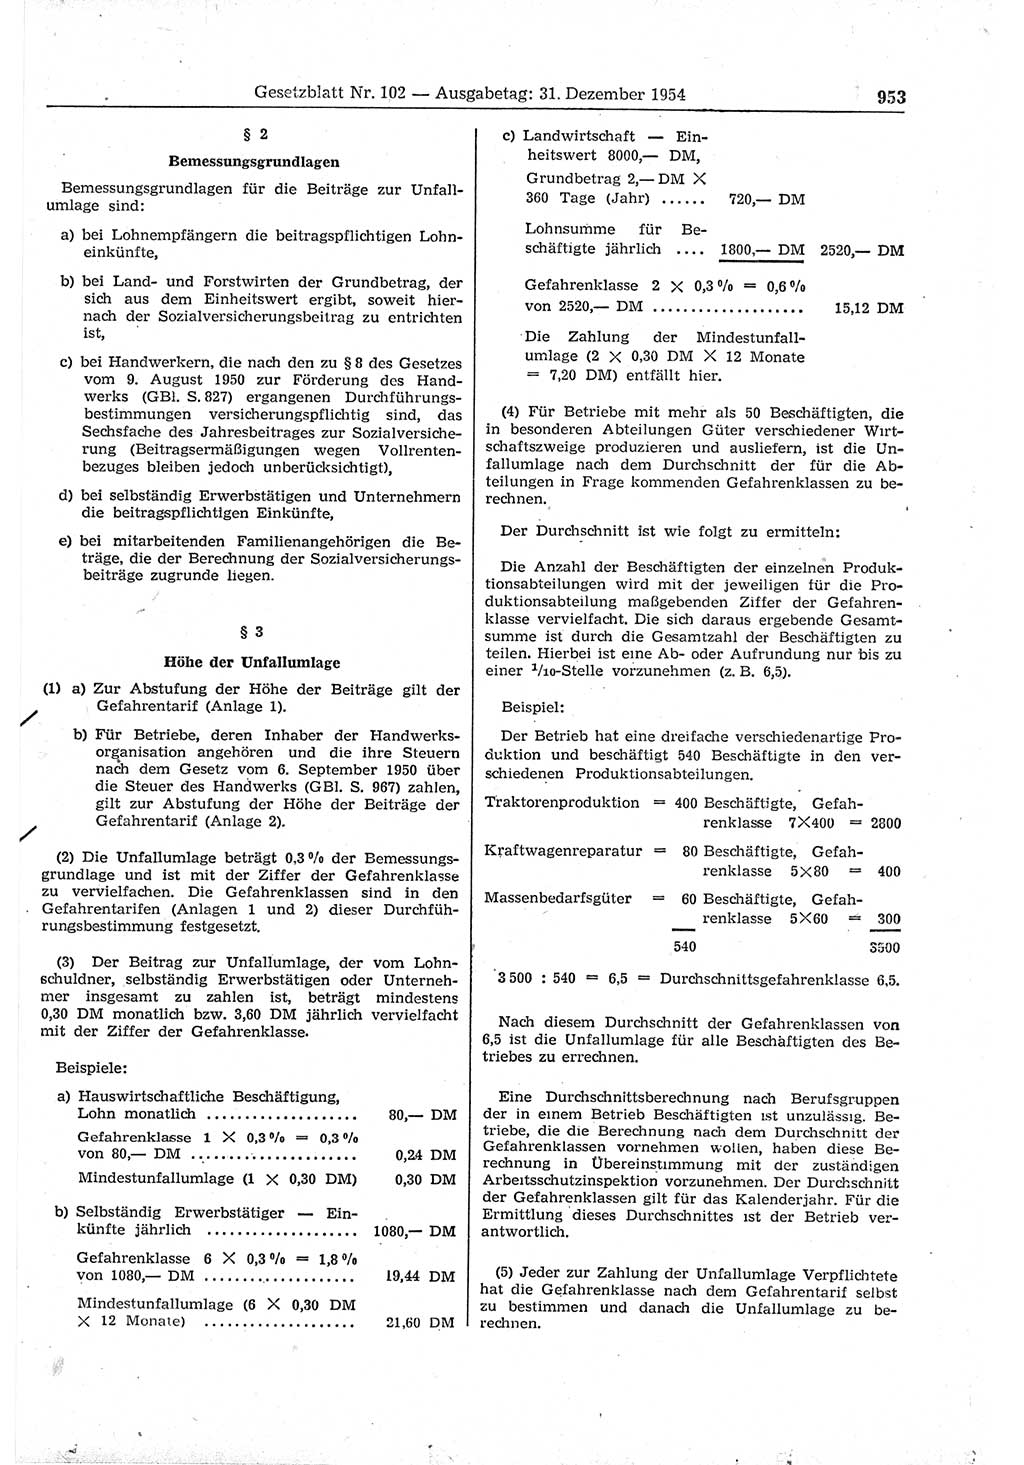 Gesetzblatt (GBl.) der Deutschen Demokratischen Republik (DDR) 1954, Seite 953 (GBl. DDR 1954, S. 953)